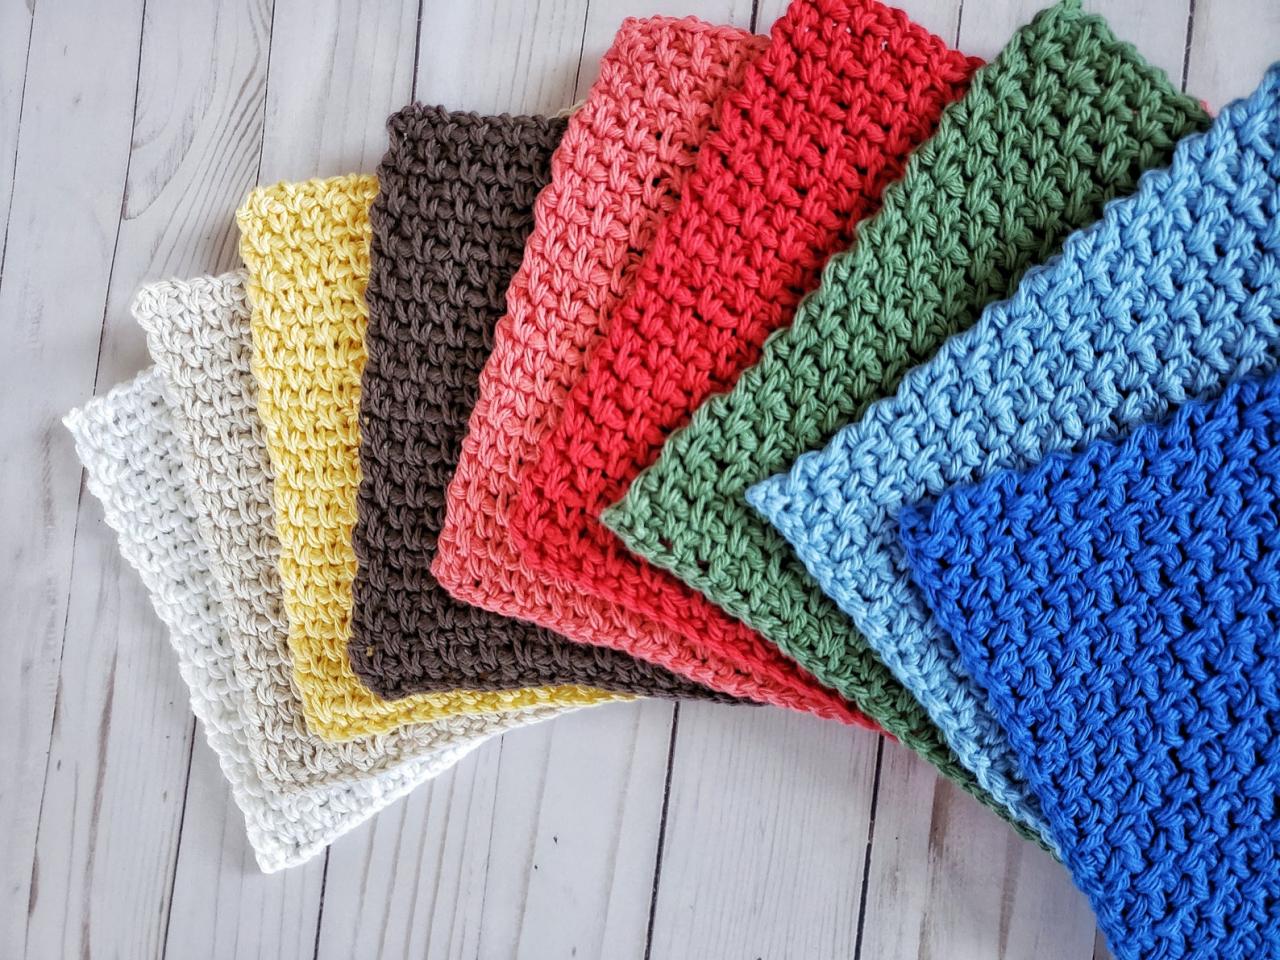 Camden Dishcloth - Cotton Dishcloth - Crochet Dishcloths - Dishcloths - Colorful Dishcloths - Crochet Dishcloth